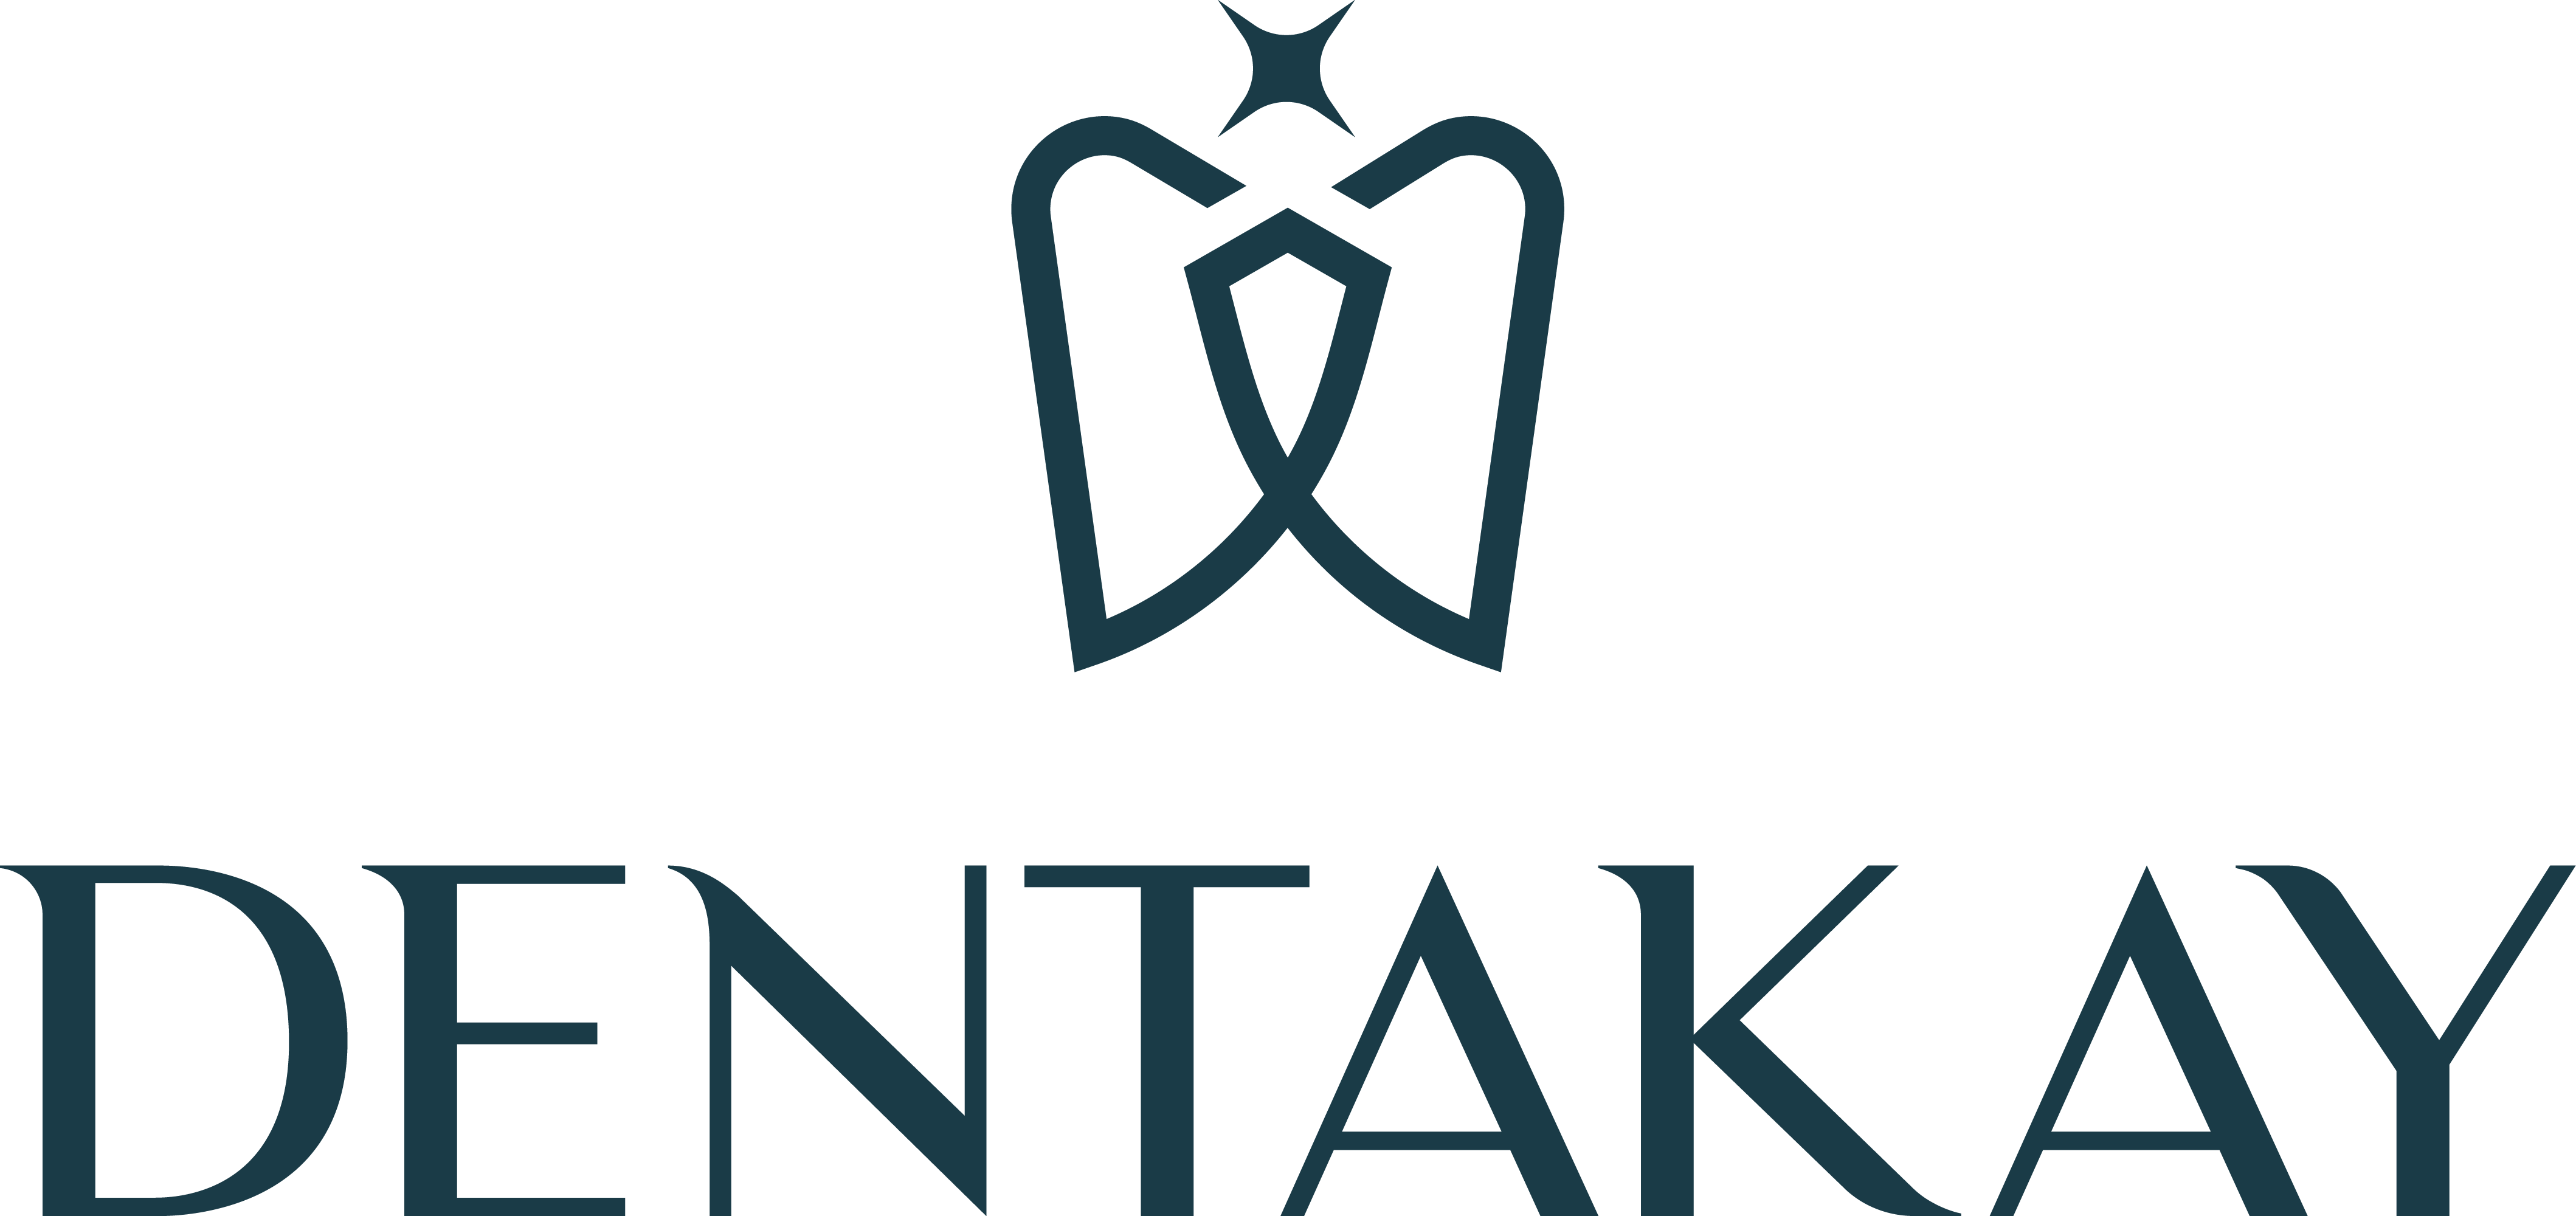 Dentakay logo.png